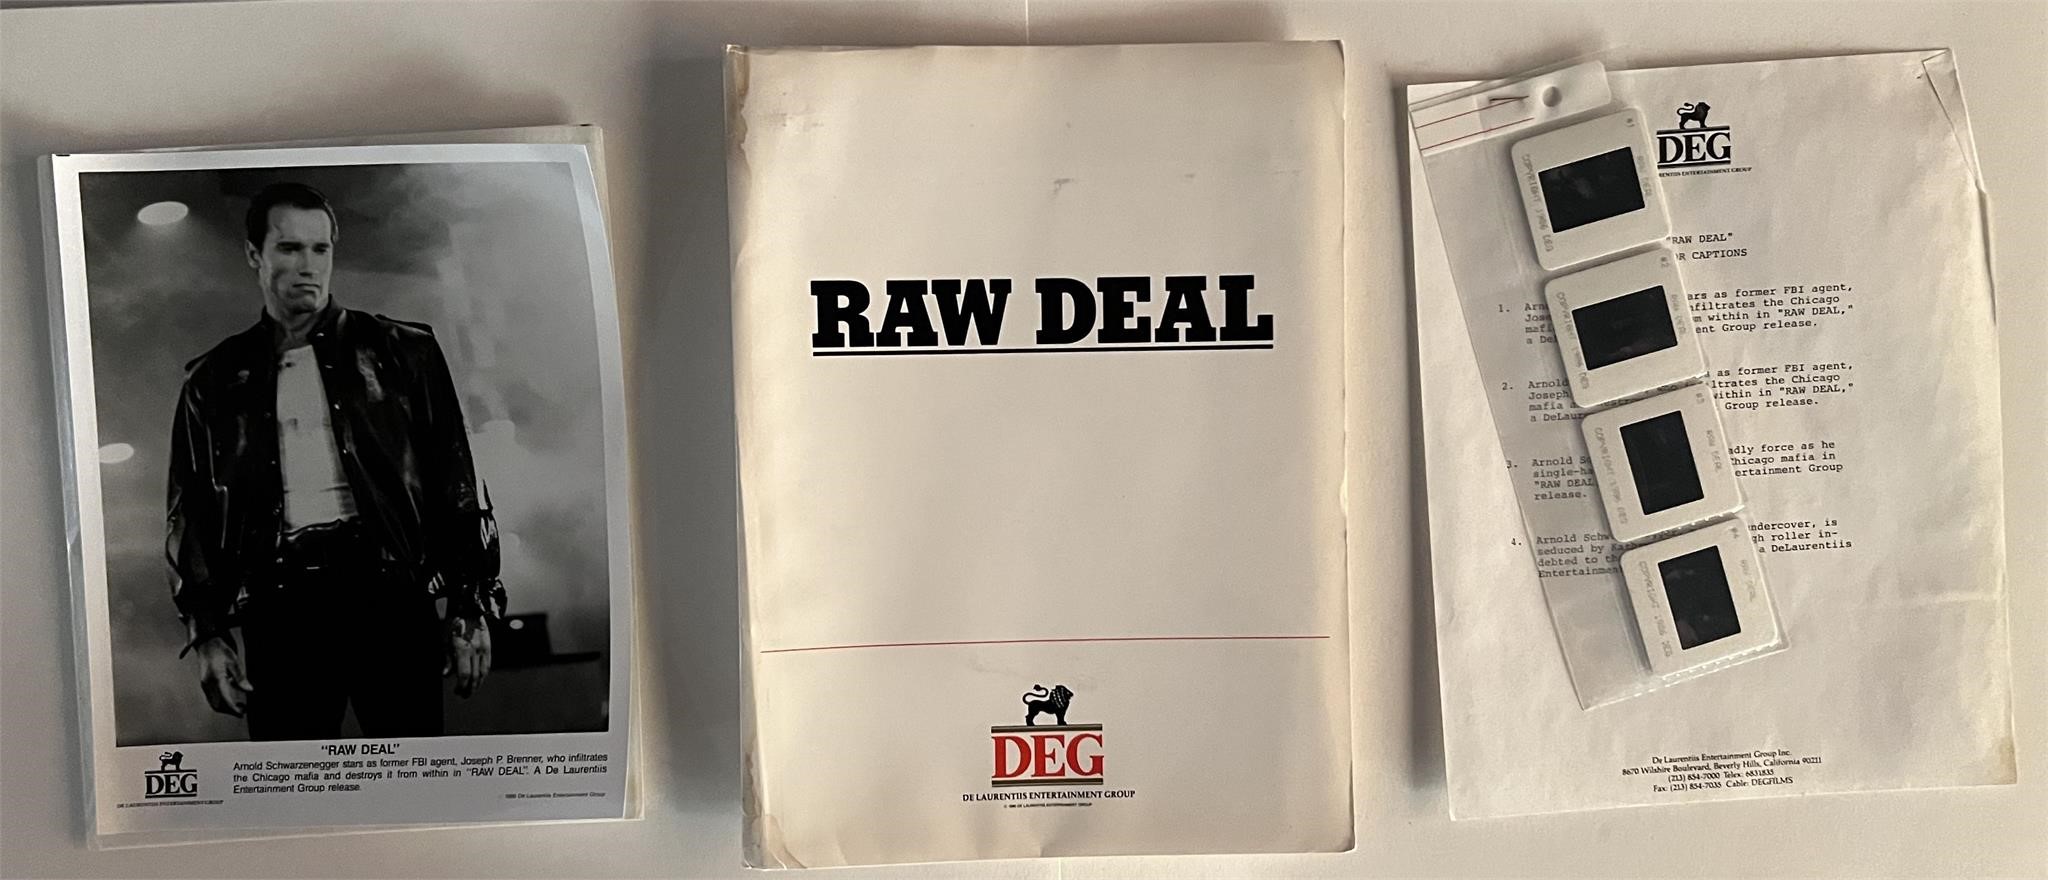 Raw Deal press kit